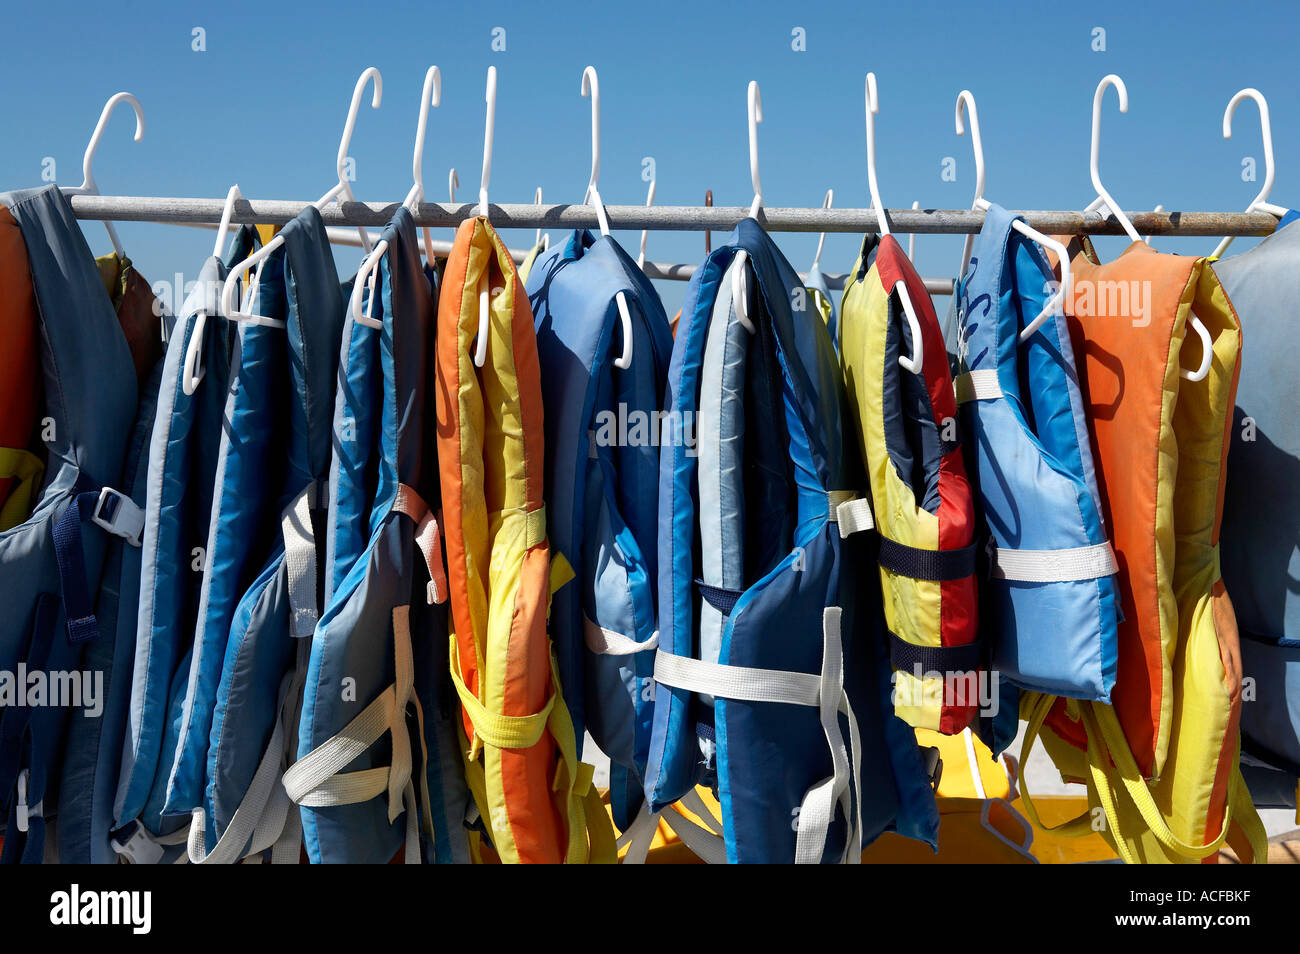 Auftrieb-Jacken auf einer Schiene, verwendet bei der Anmietung eines Jet-Ski Captiva Island in Florida Amerika Vereinigte Staaten usa Stockfoto